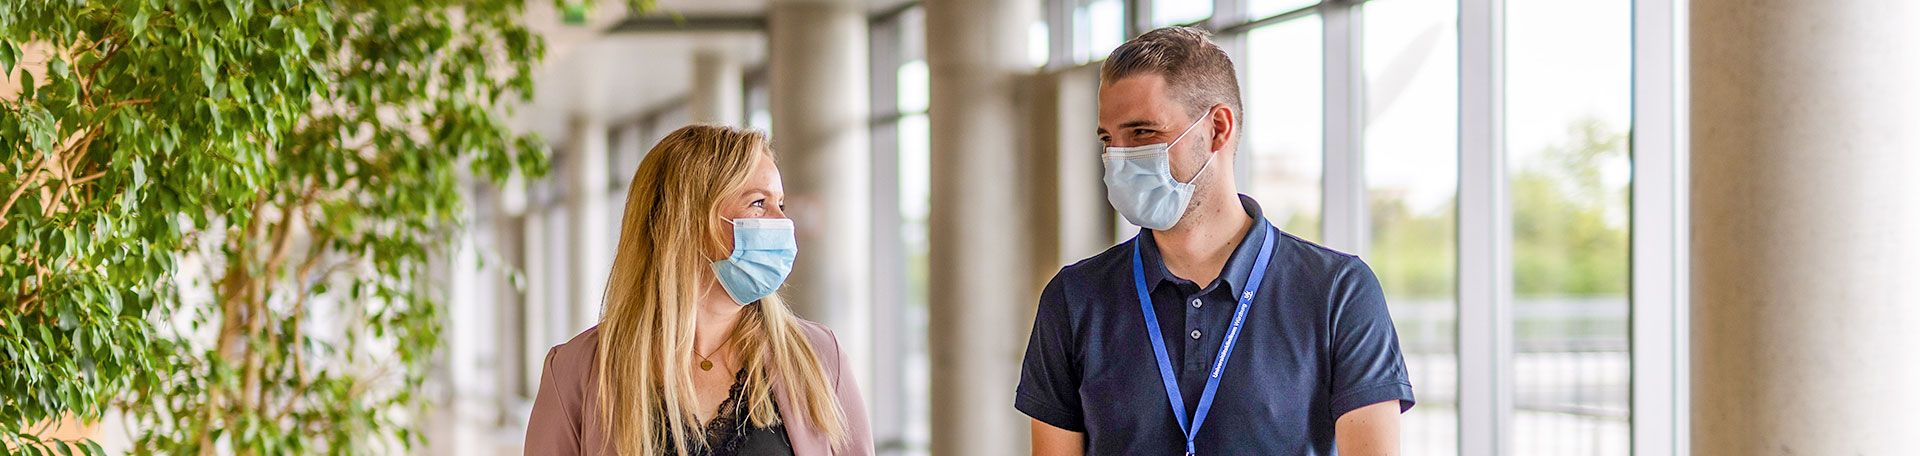 Illustrationsbild zwei Krankenhausmitarbeitende im Gespräch mit Masken auf